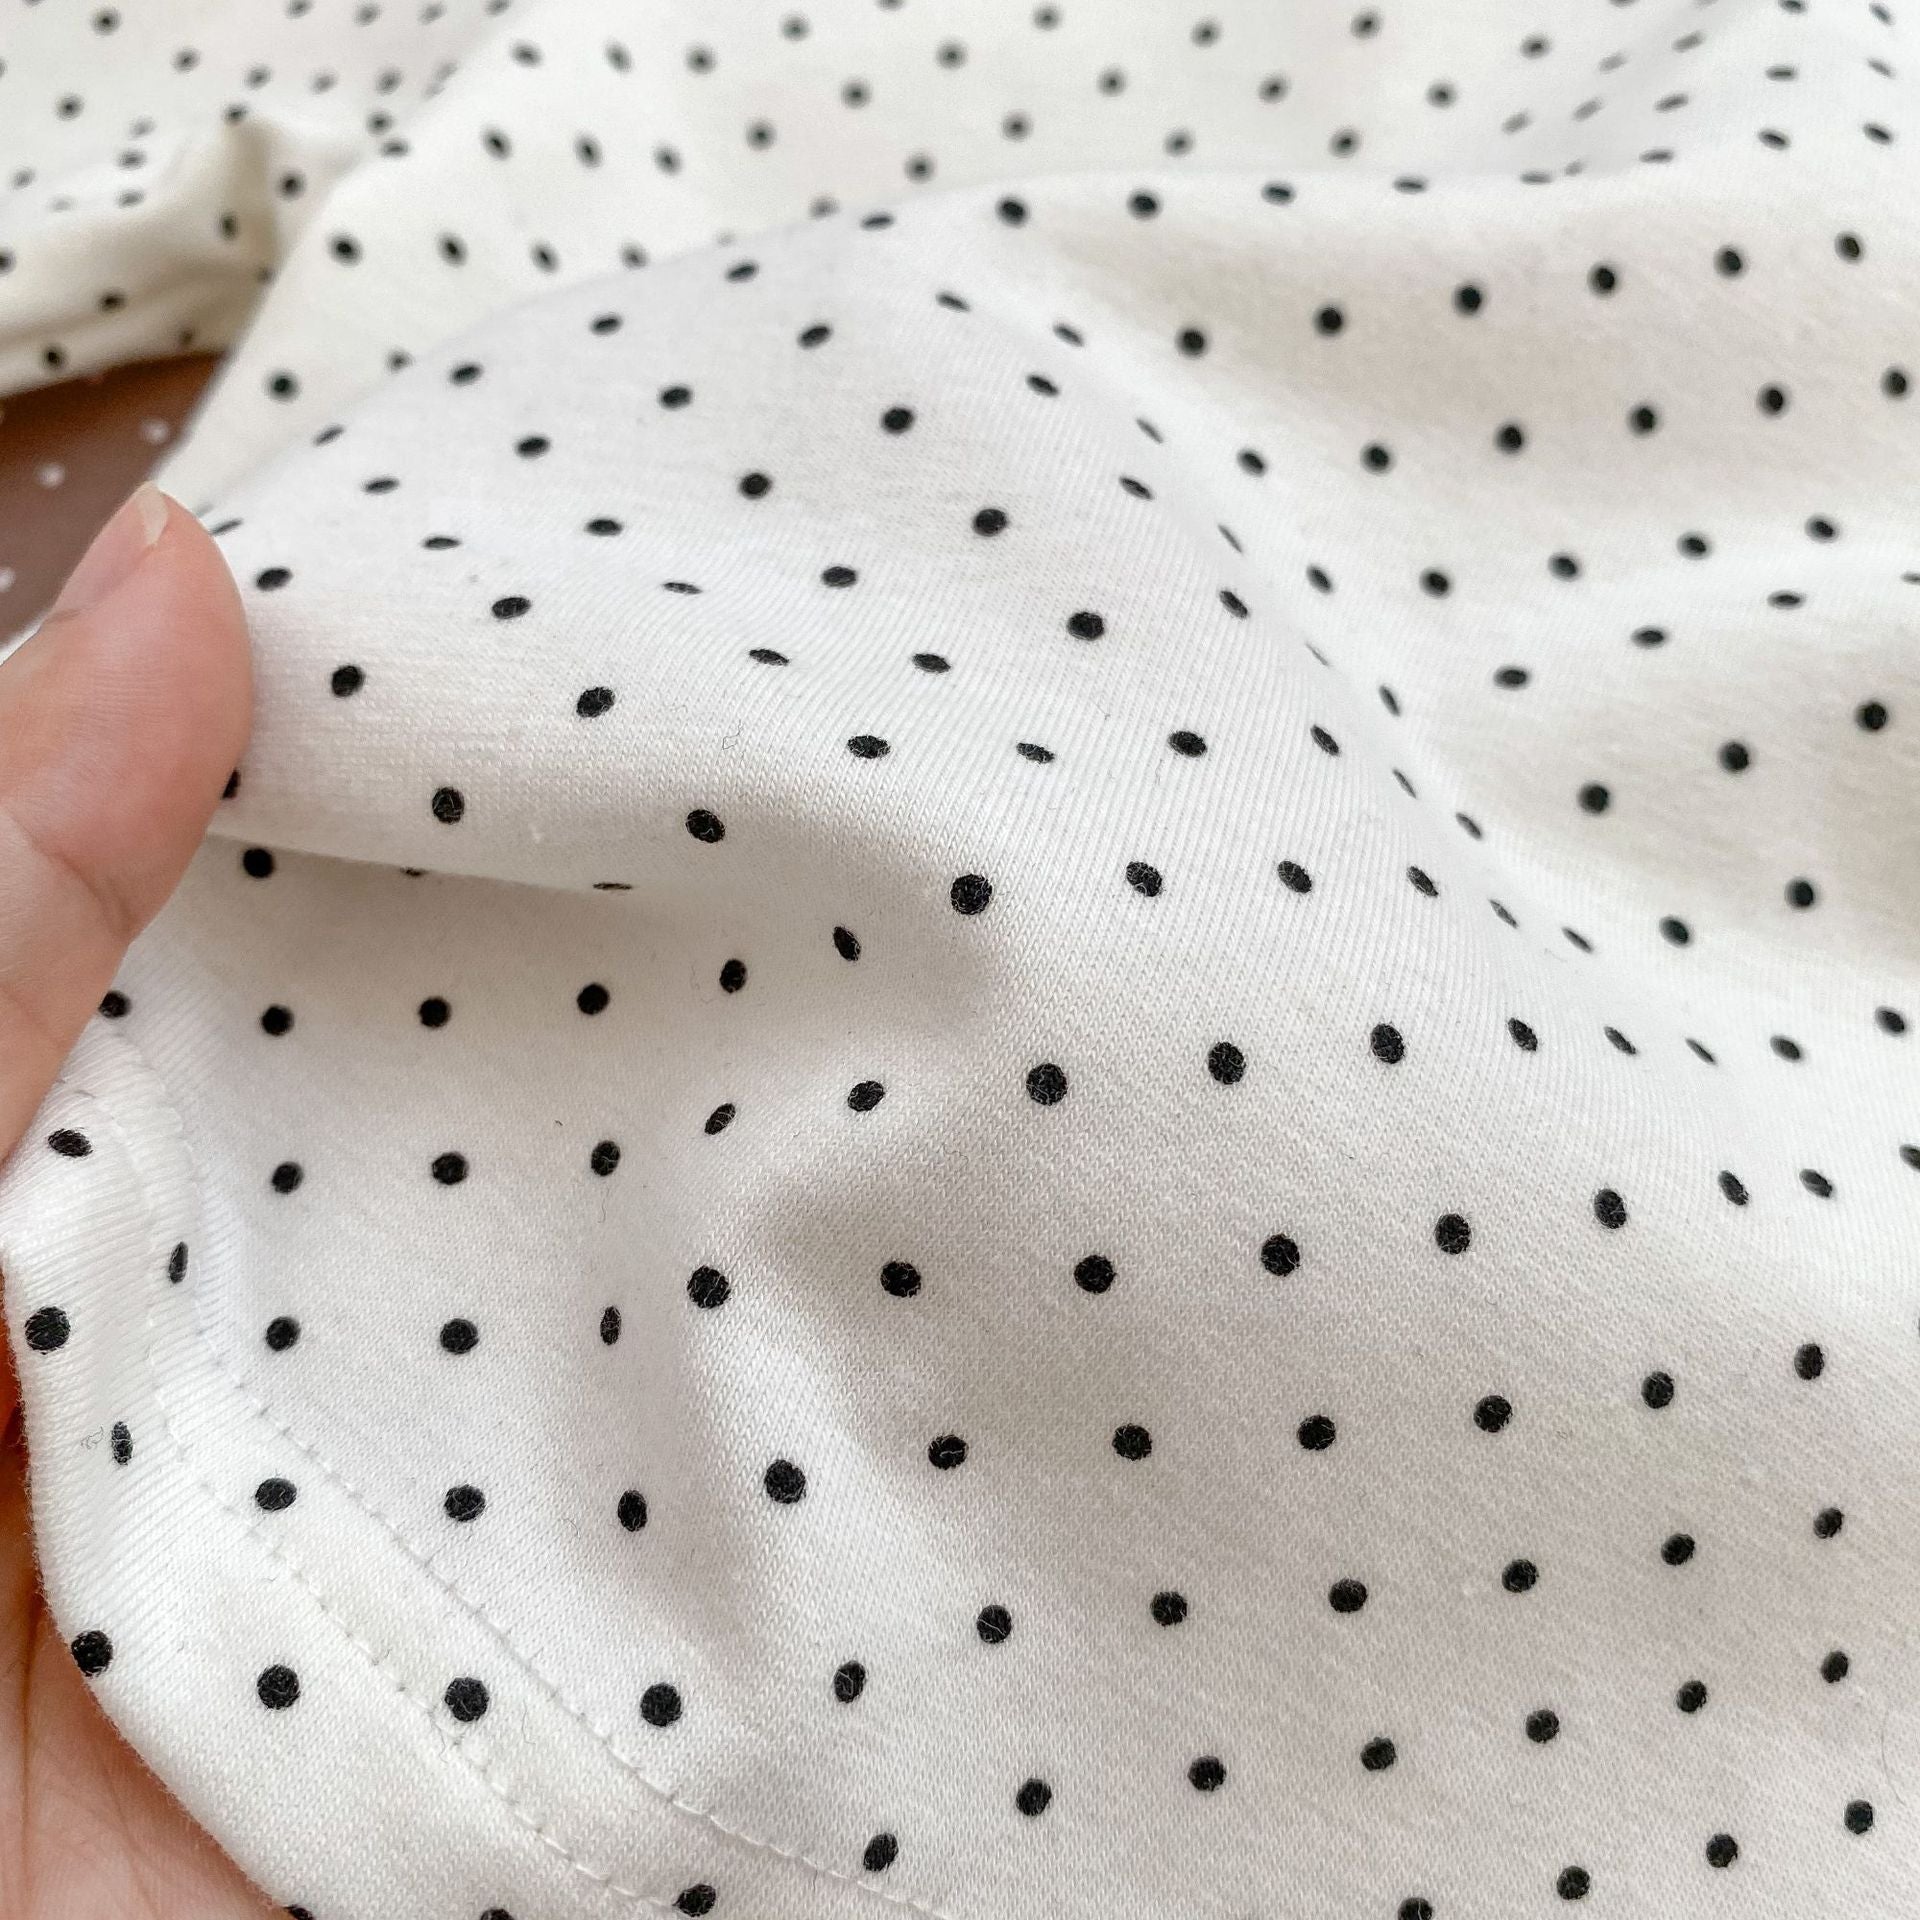 Newborn Soft Cotton Sleepwear Suits